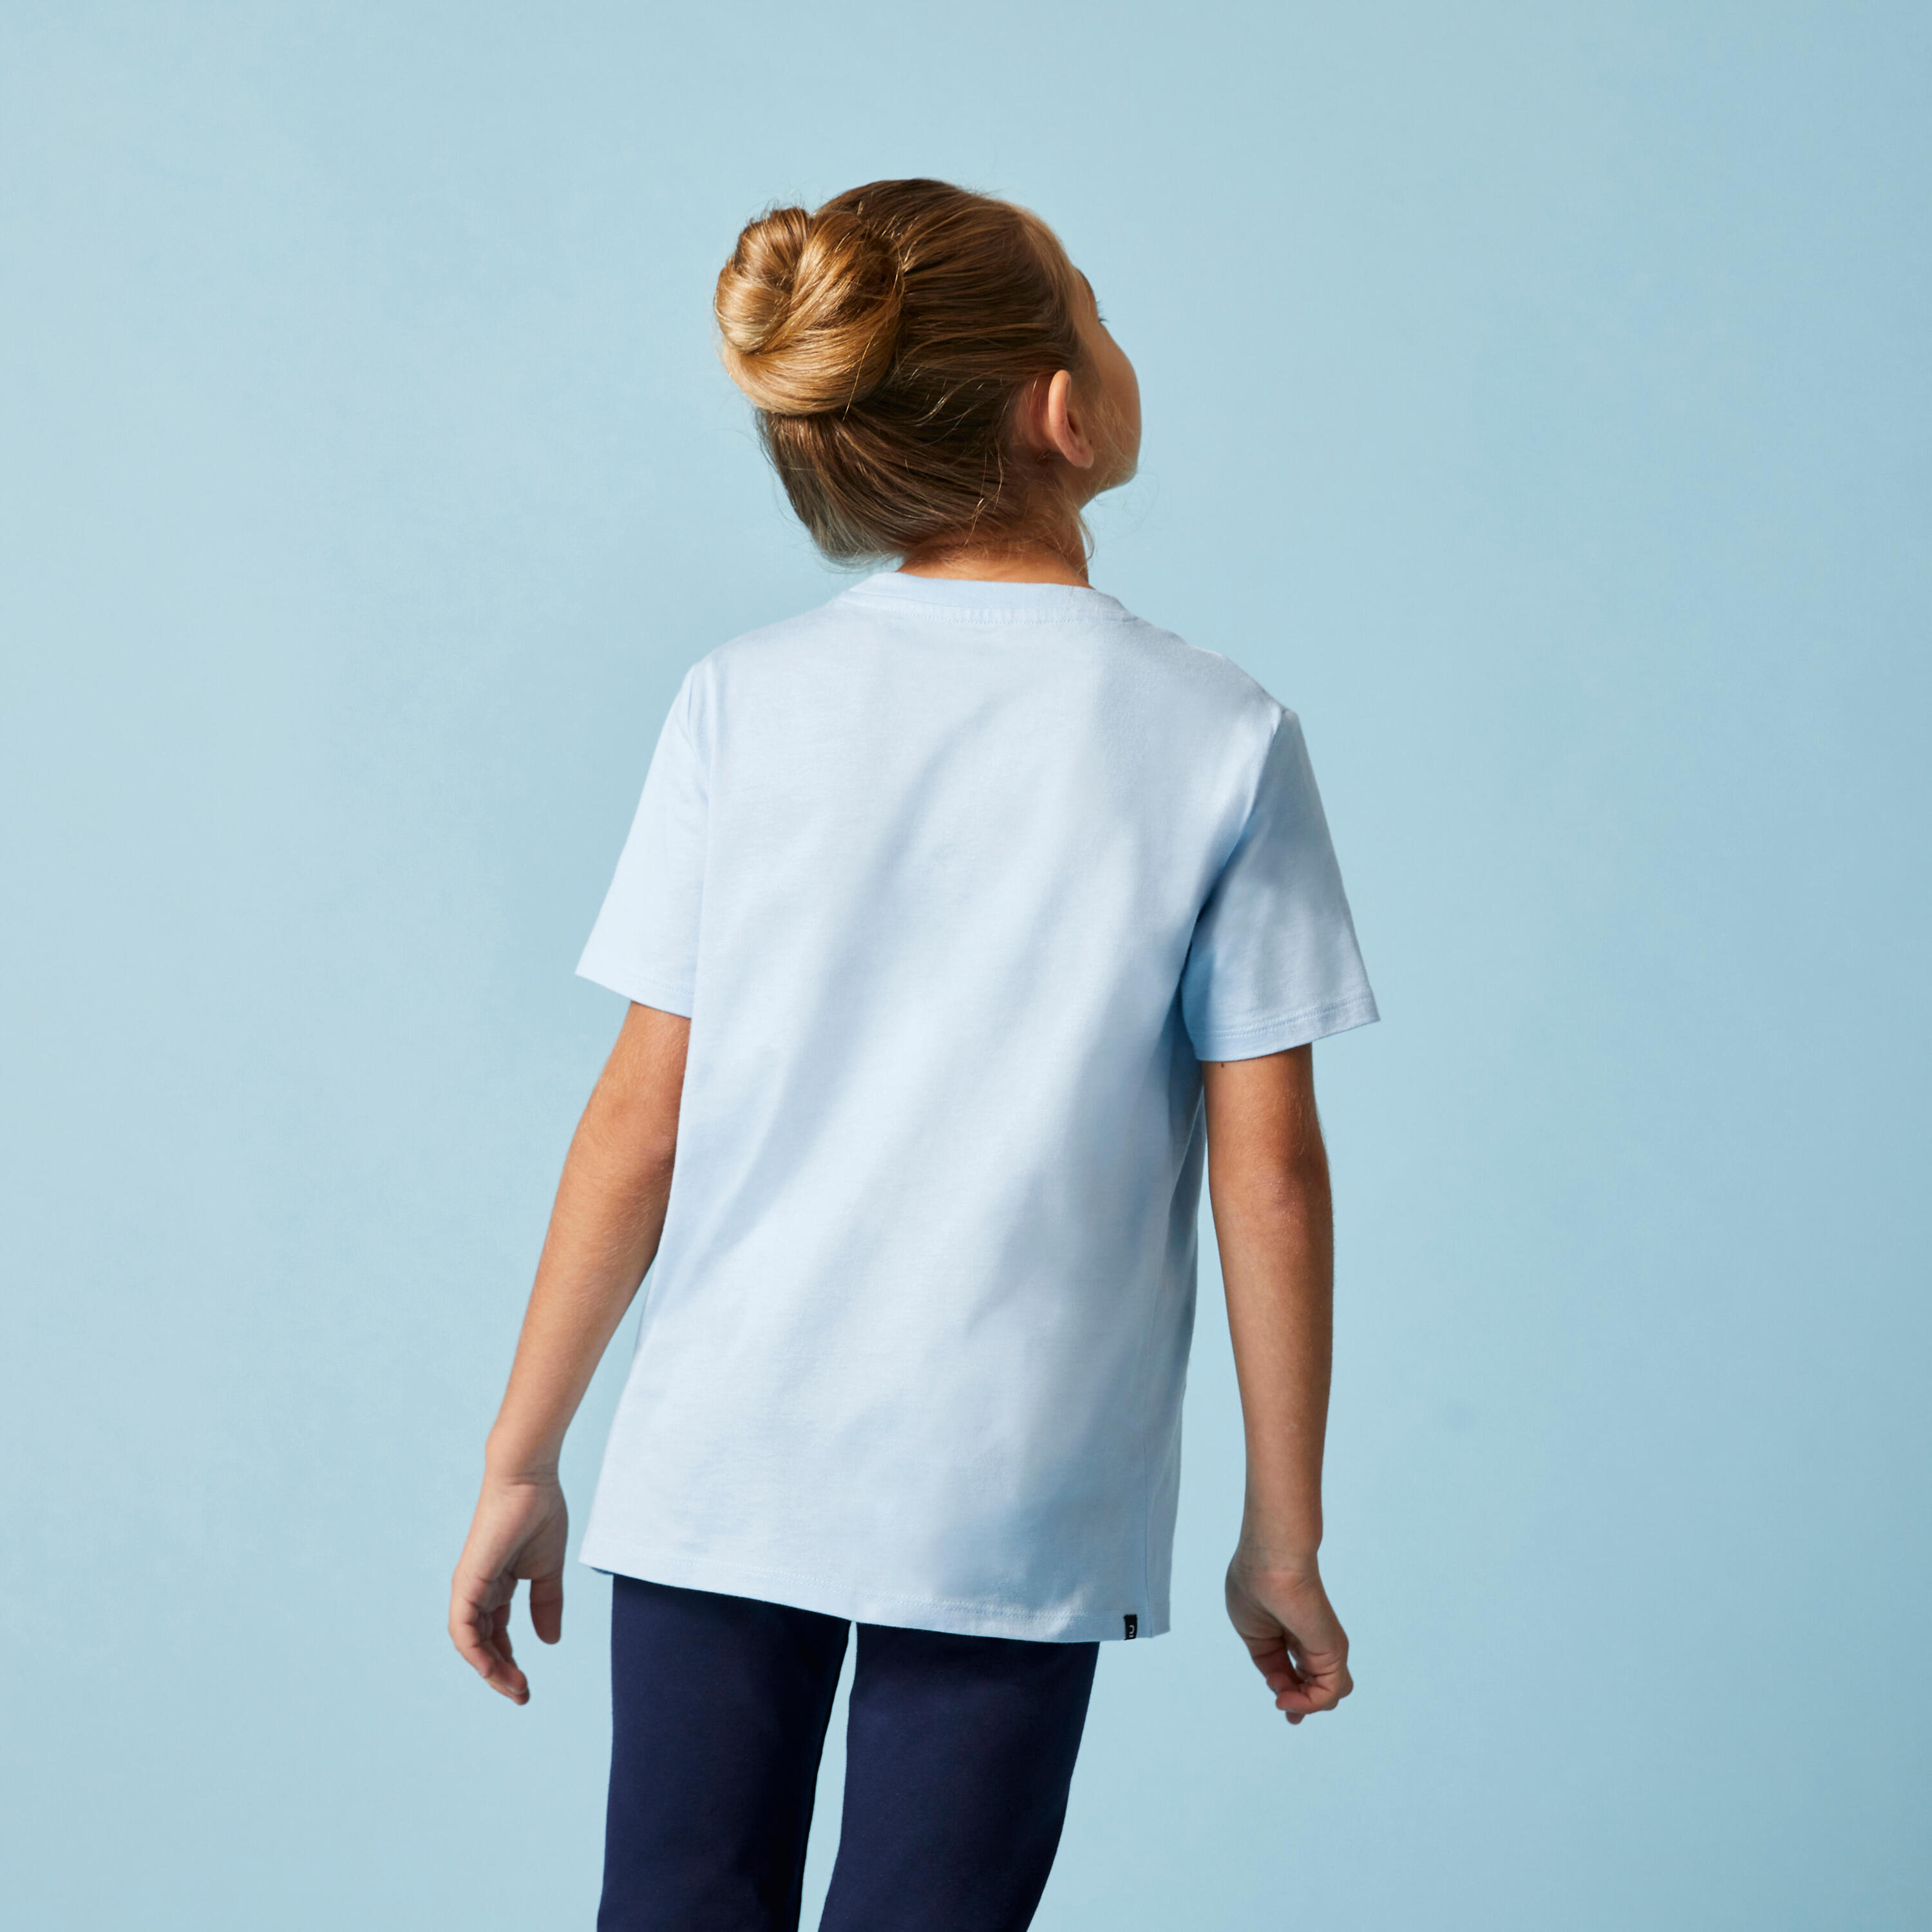 Kids' Unisex Cotton T-Shirt - Sky Blue 3/8